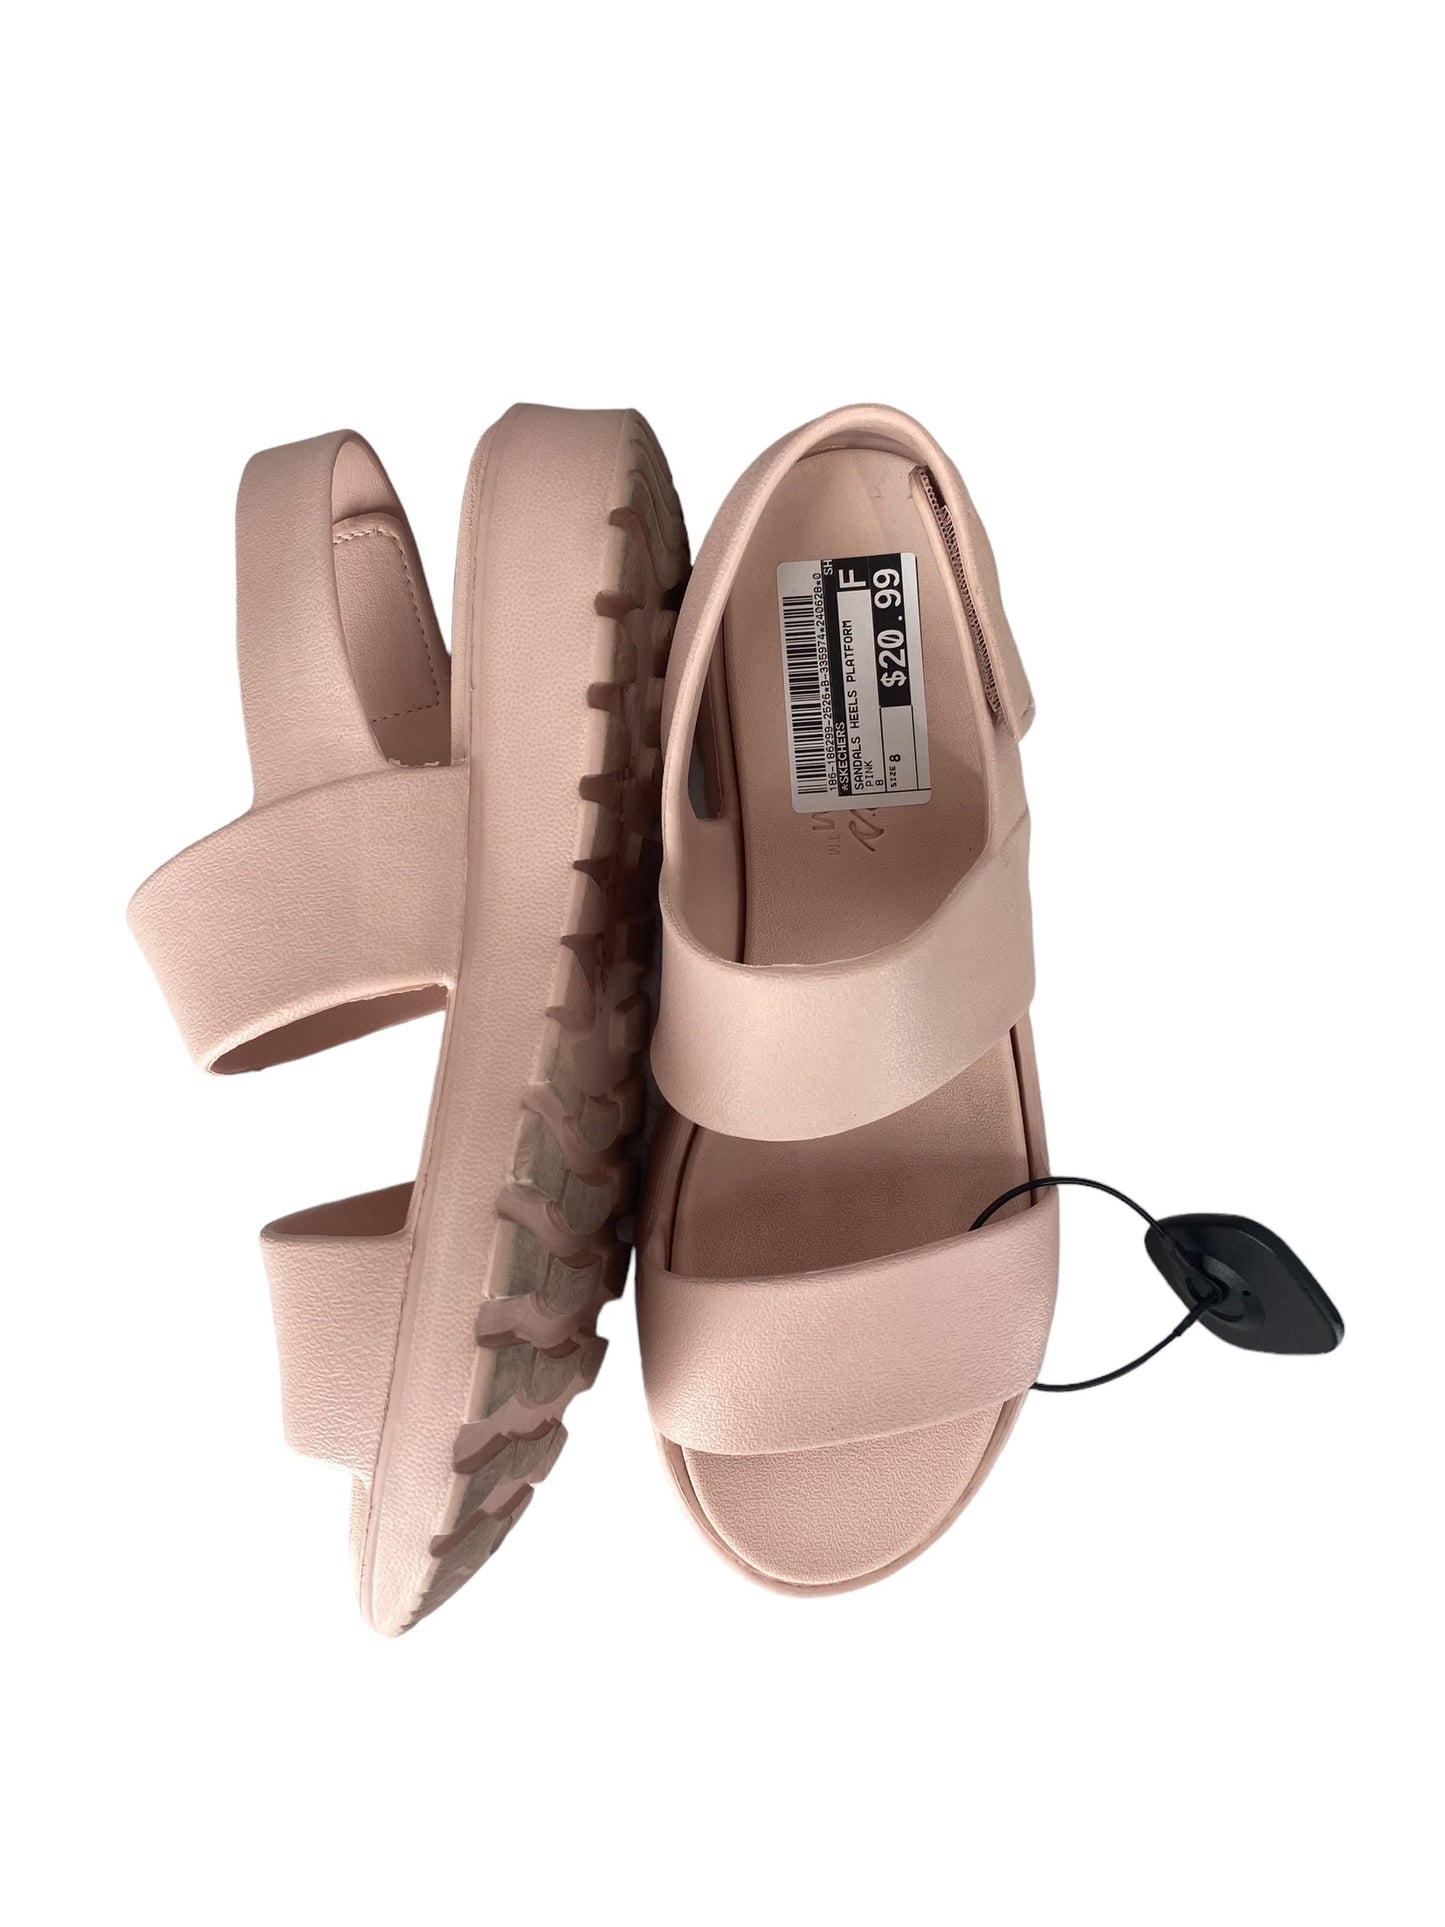 Pink Sandals Heels Platform Skechers, Size 8